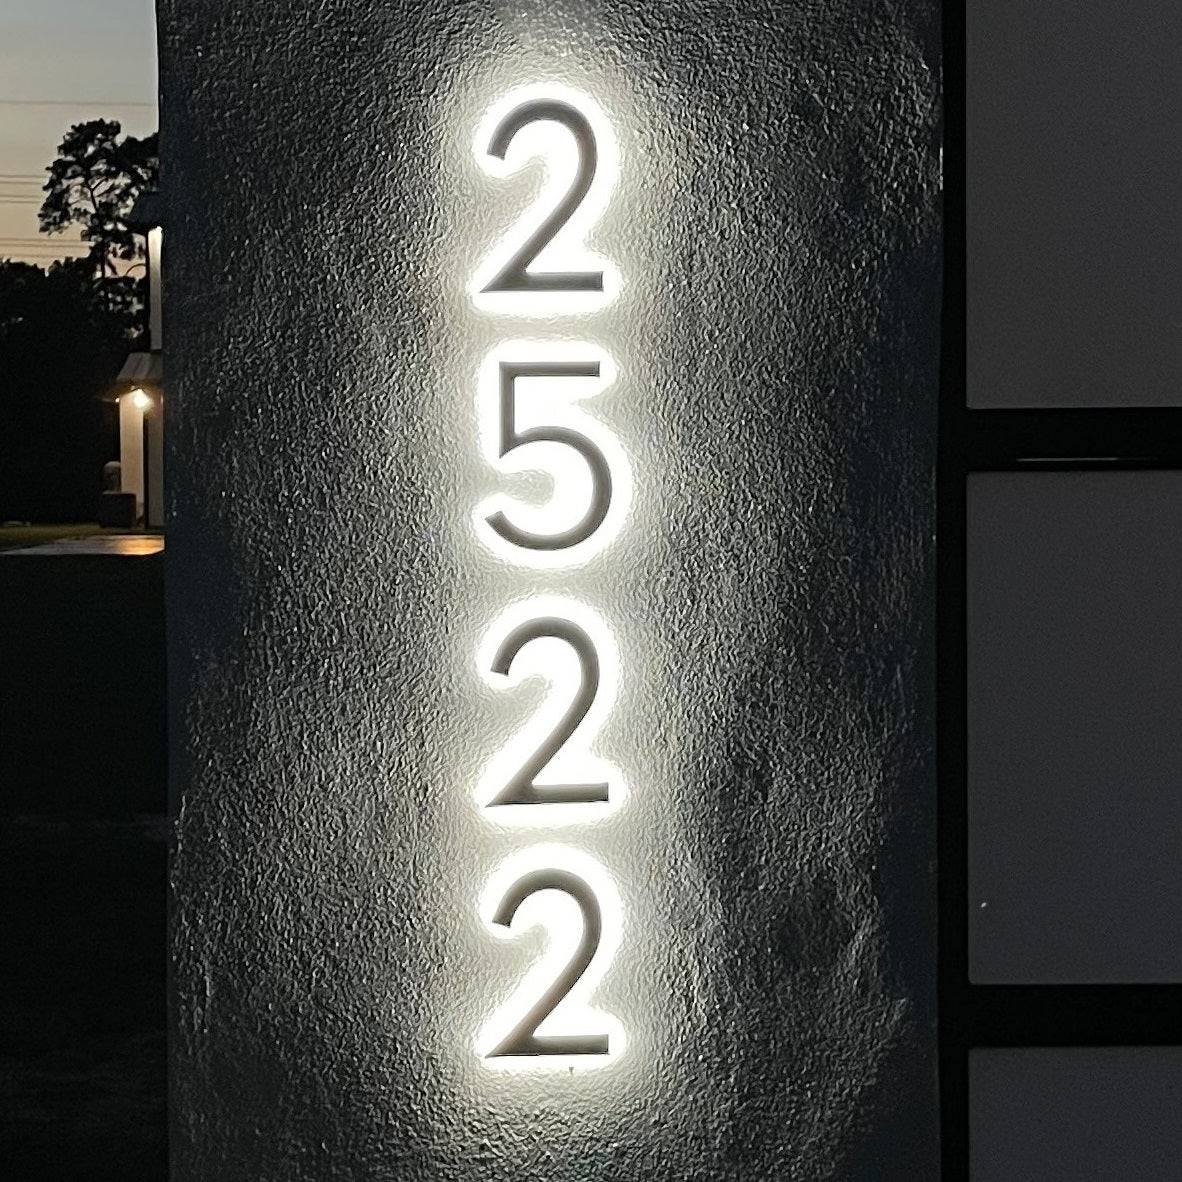 Morden LED Backlit House Numbers Sign Custom Number Sign Room Number Plaque Outdoor Waterproof Illuminated Modern Hotel Room Number Backlit Sign